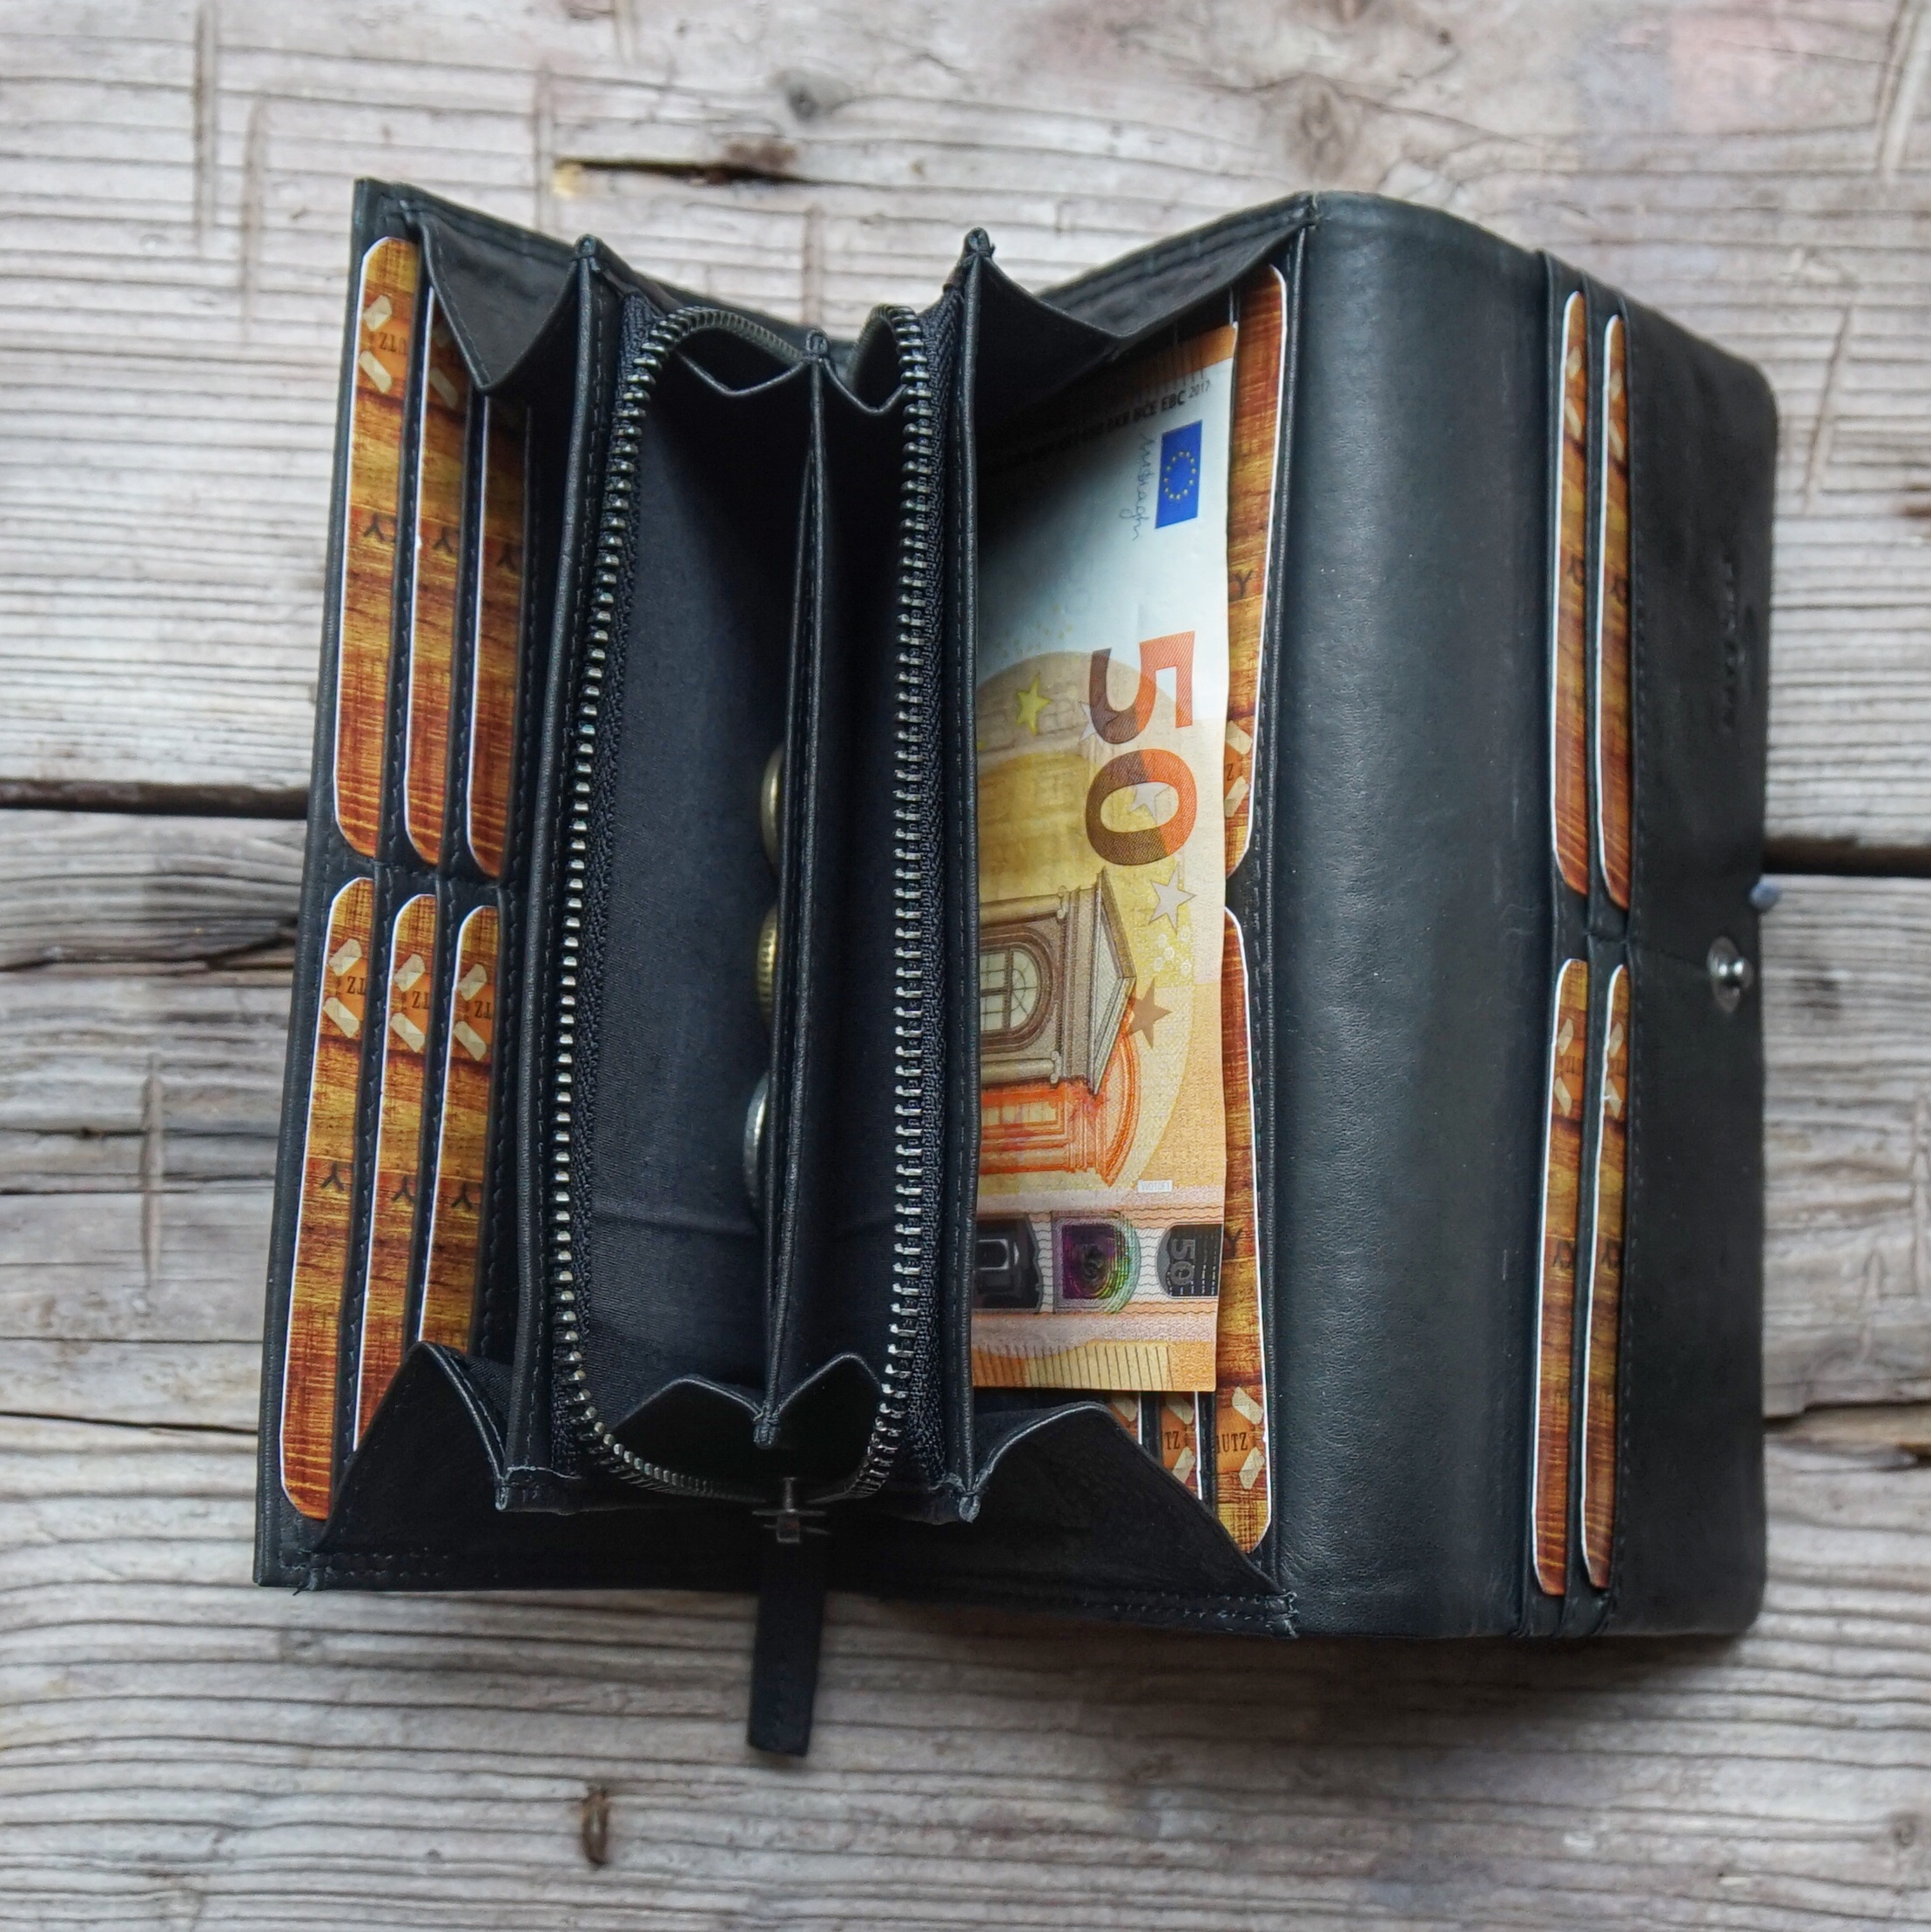 Handytasche aus Leder Montreal  Geldbörsen, Rucksäcke und Taschen in  coolem Look und funktionellem Design